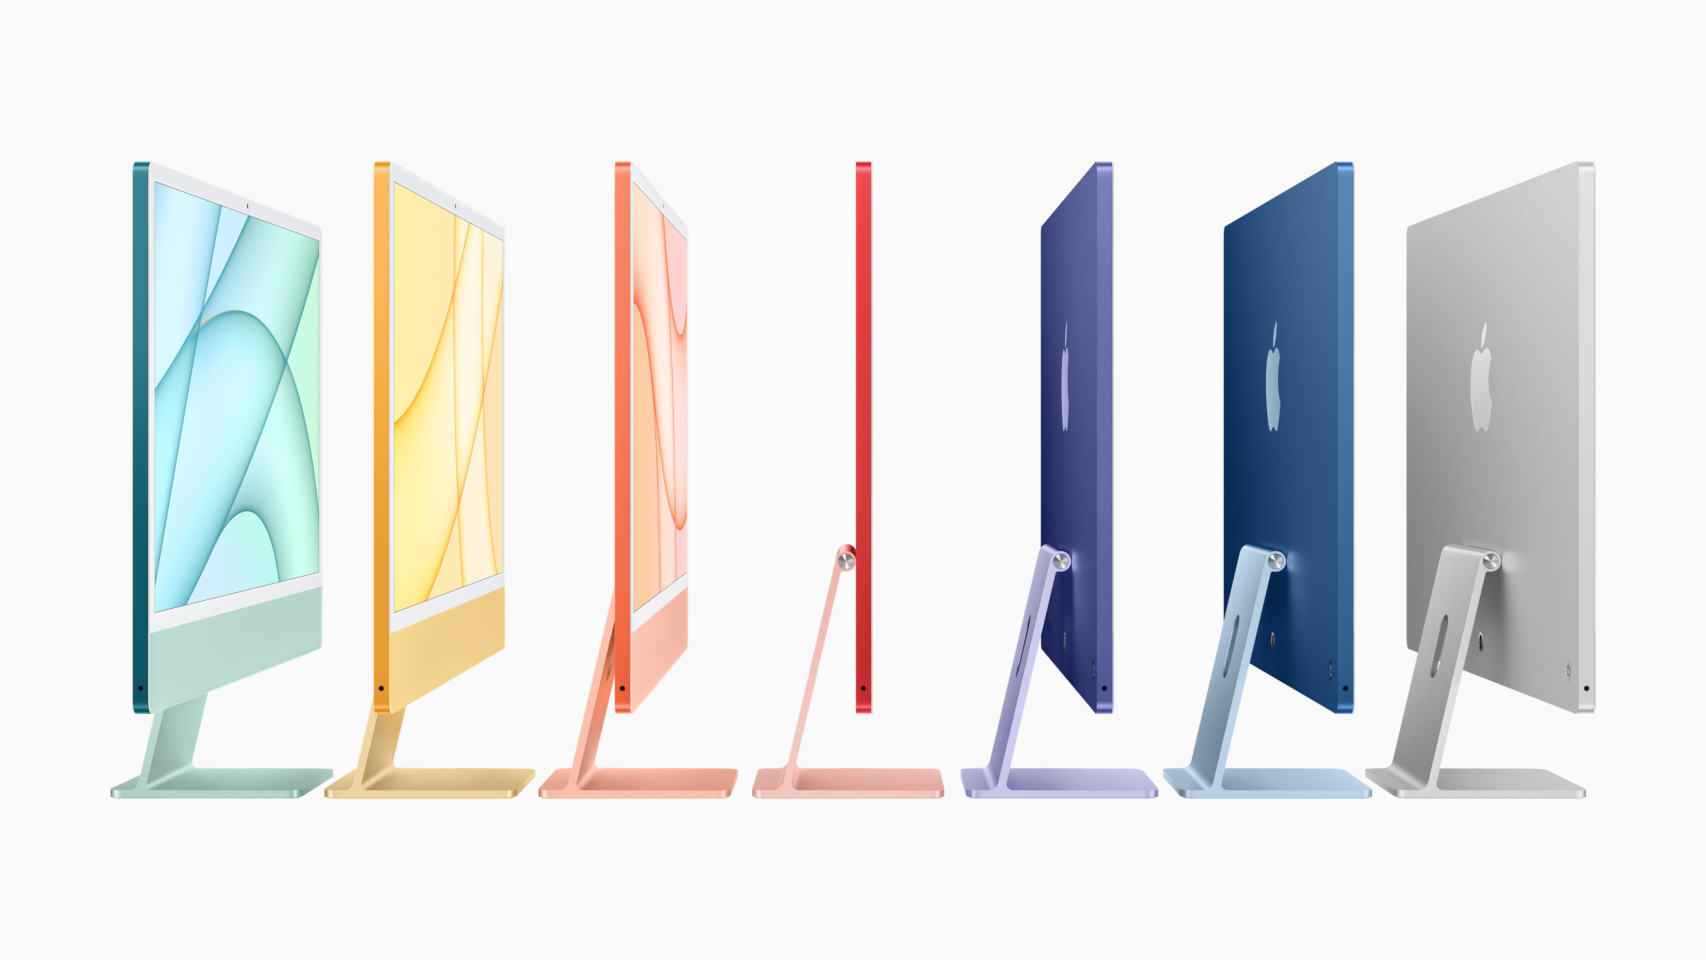 El nuevo iMac está disponible en toda una gama de colores